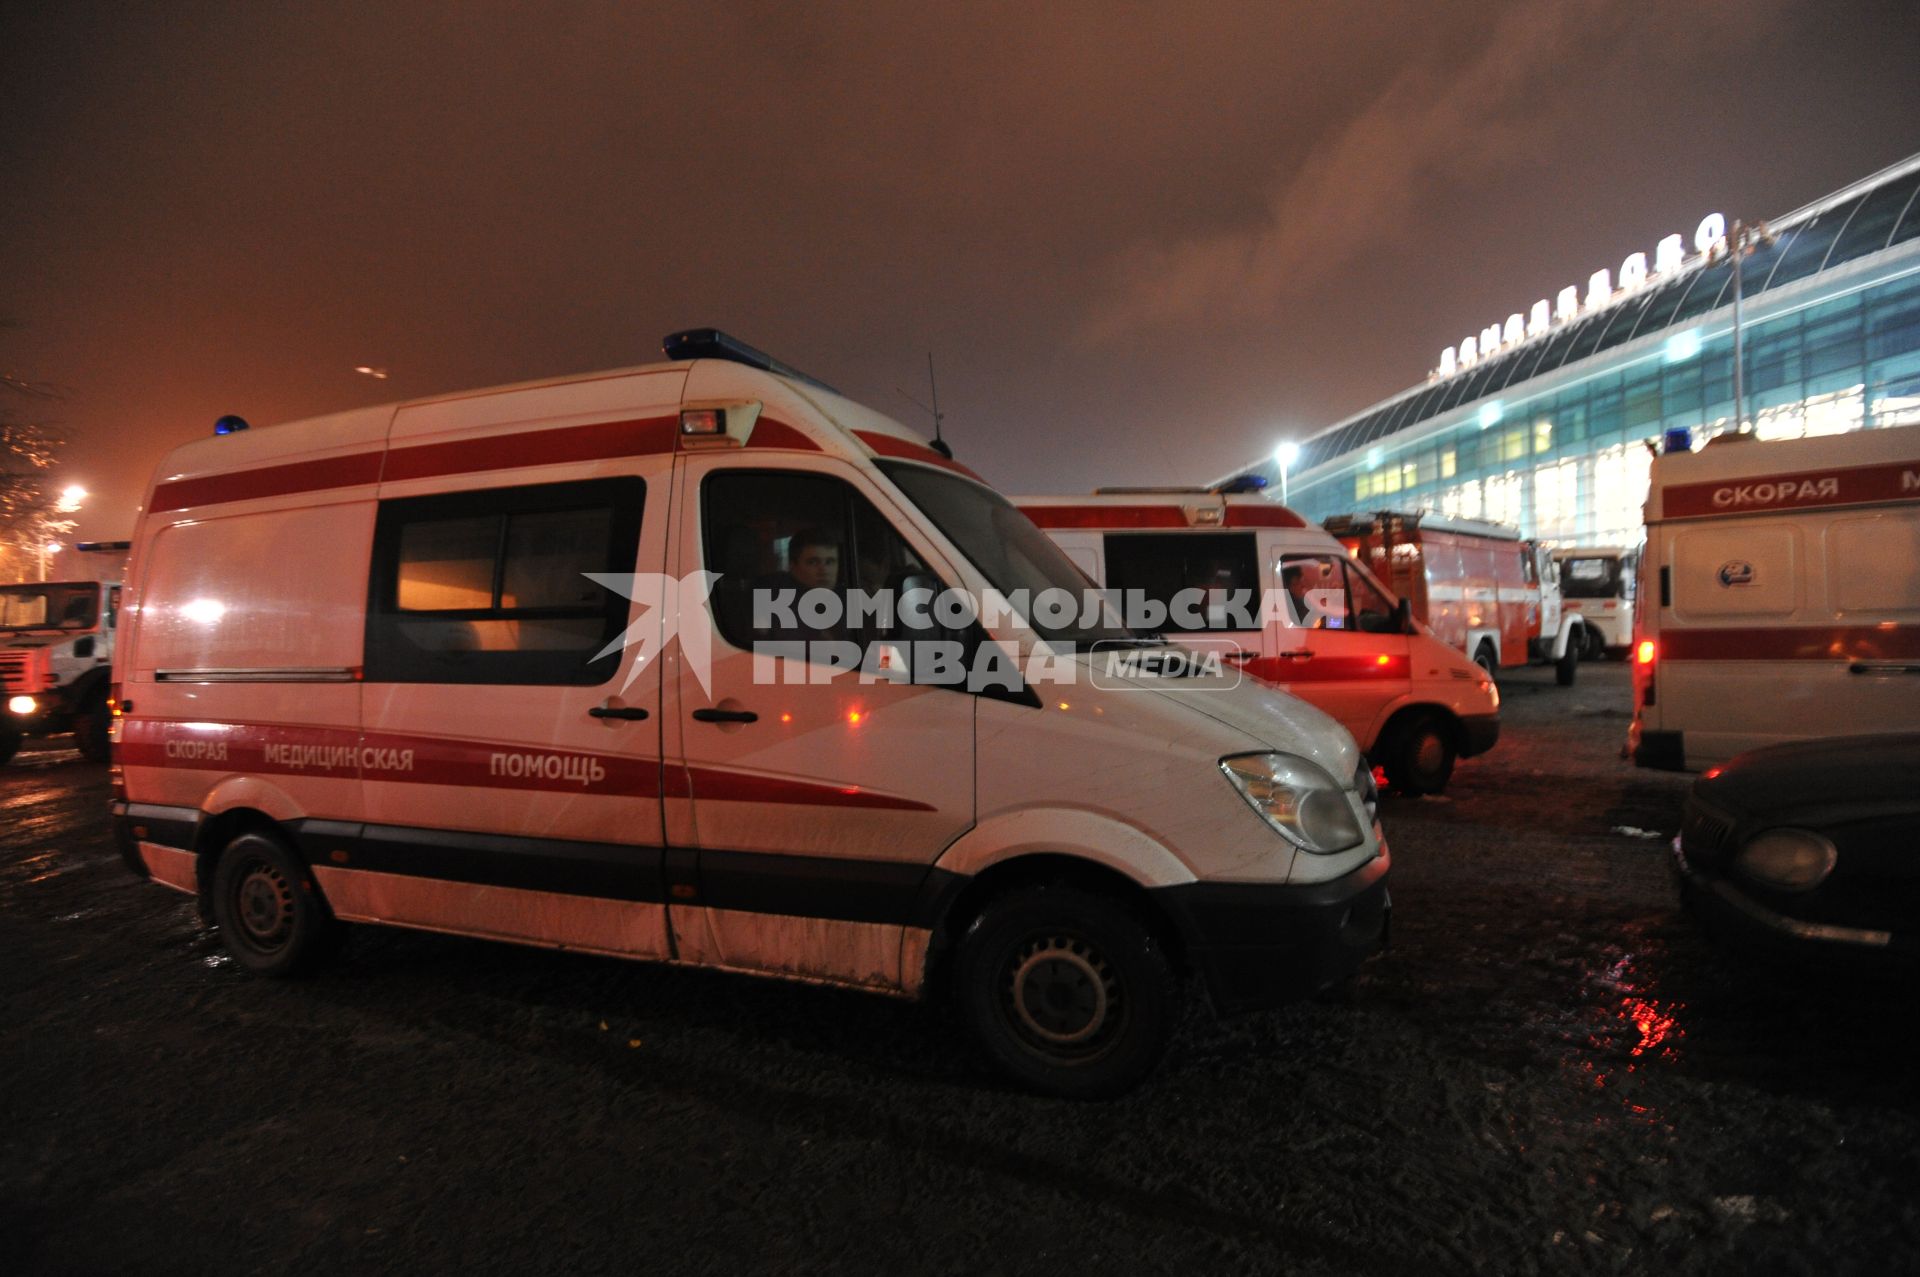 Московская область. Автомобили Скорой помощи у аэропорта Домодедово, где 24 января 2011 произошел взрыв.